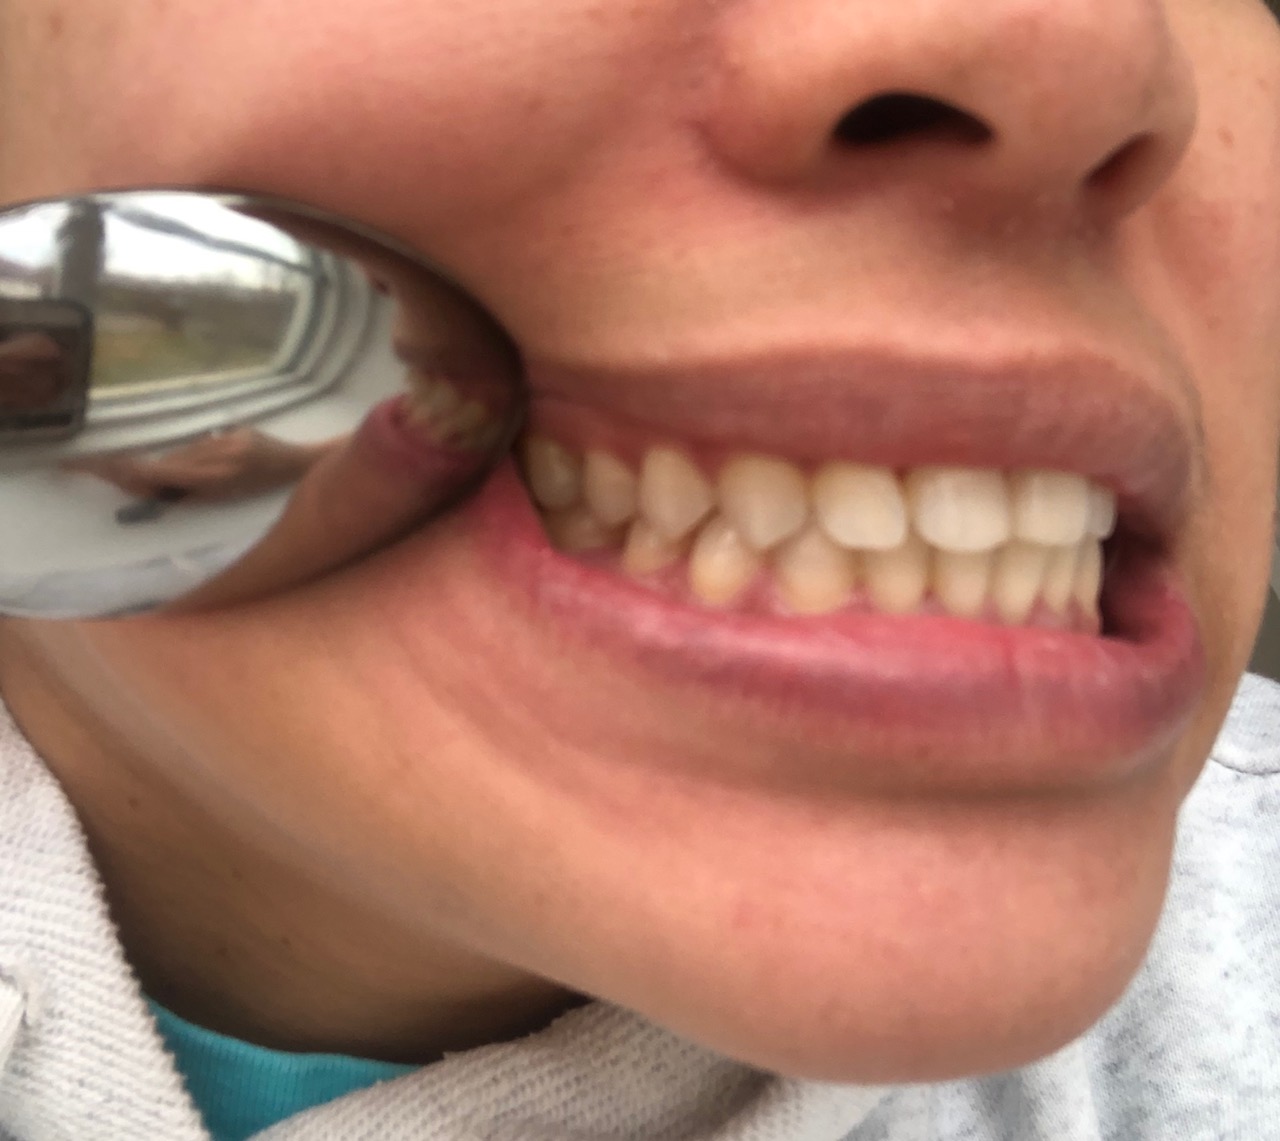 Teeth right side